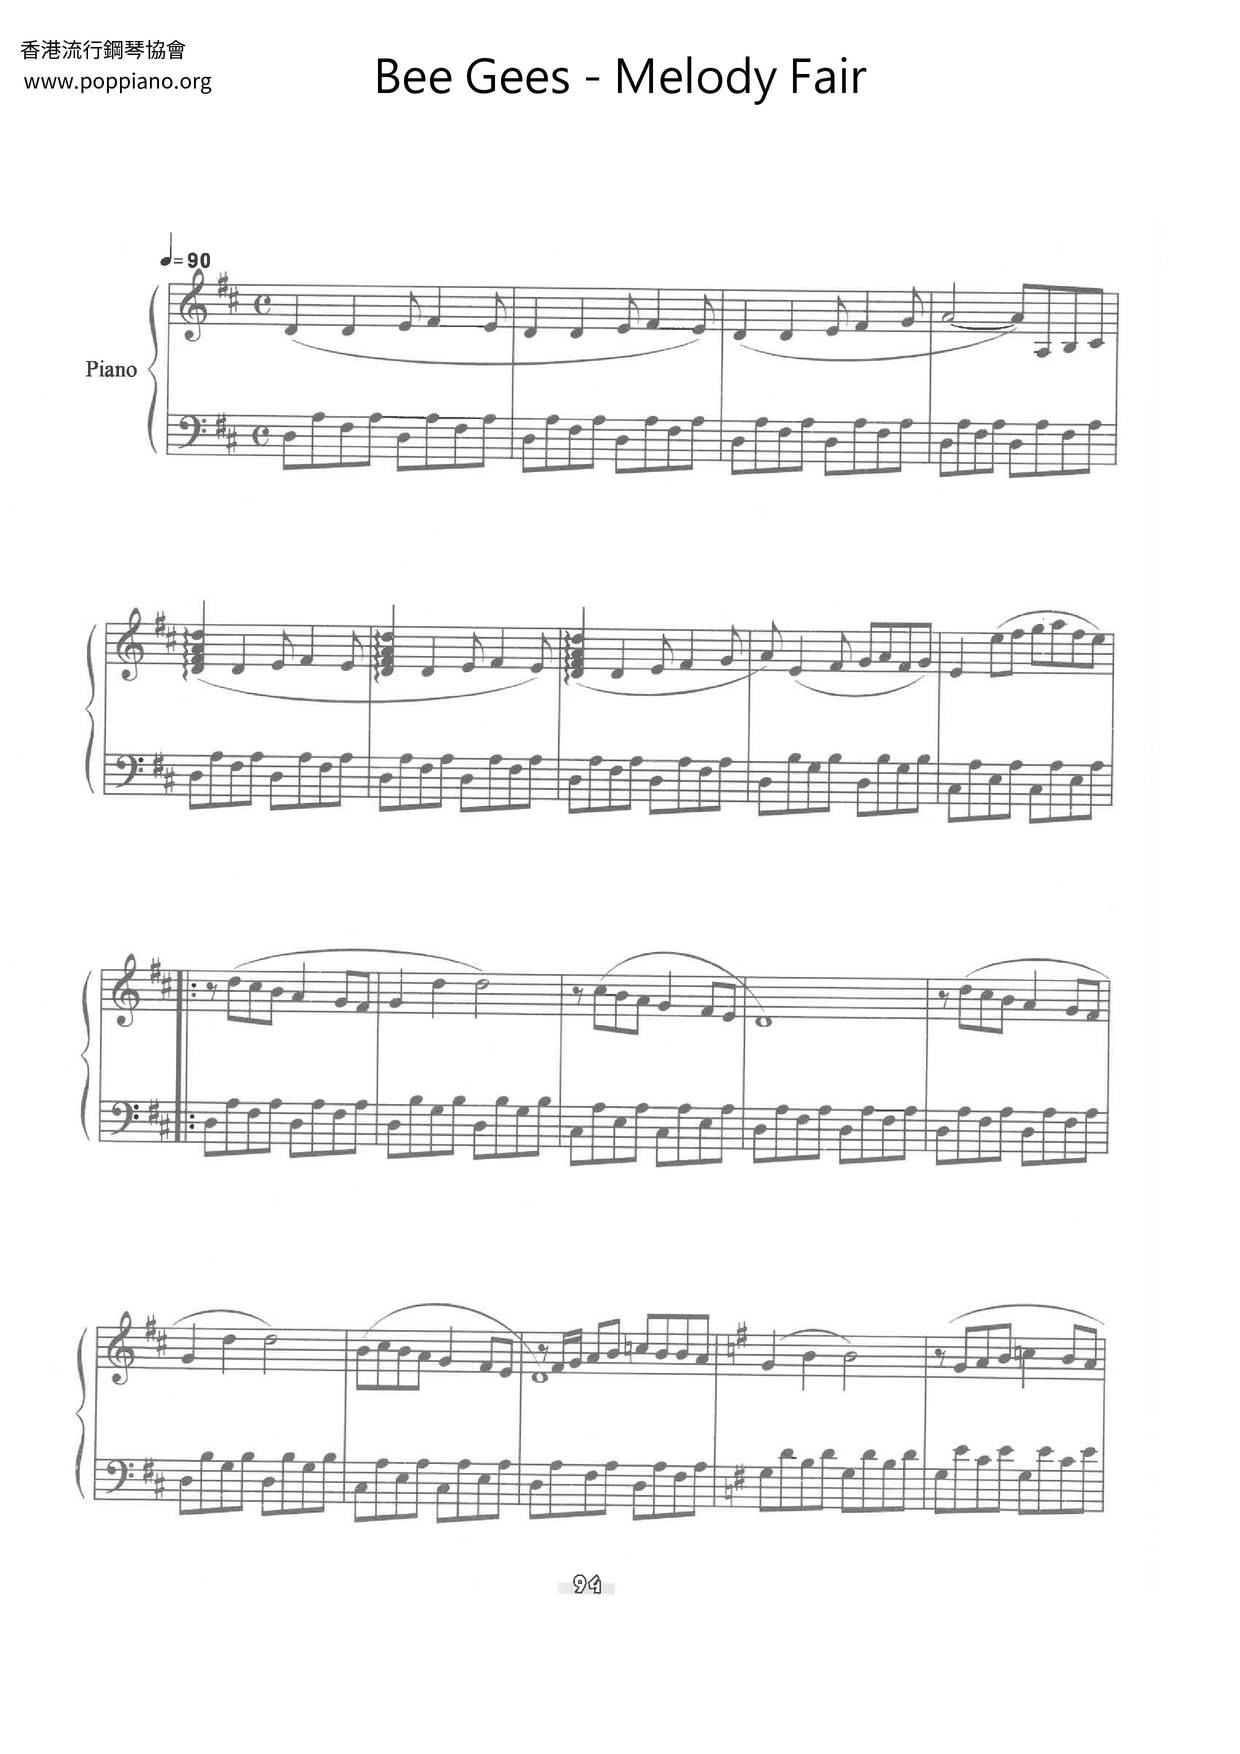 Melody Fair Score